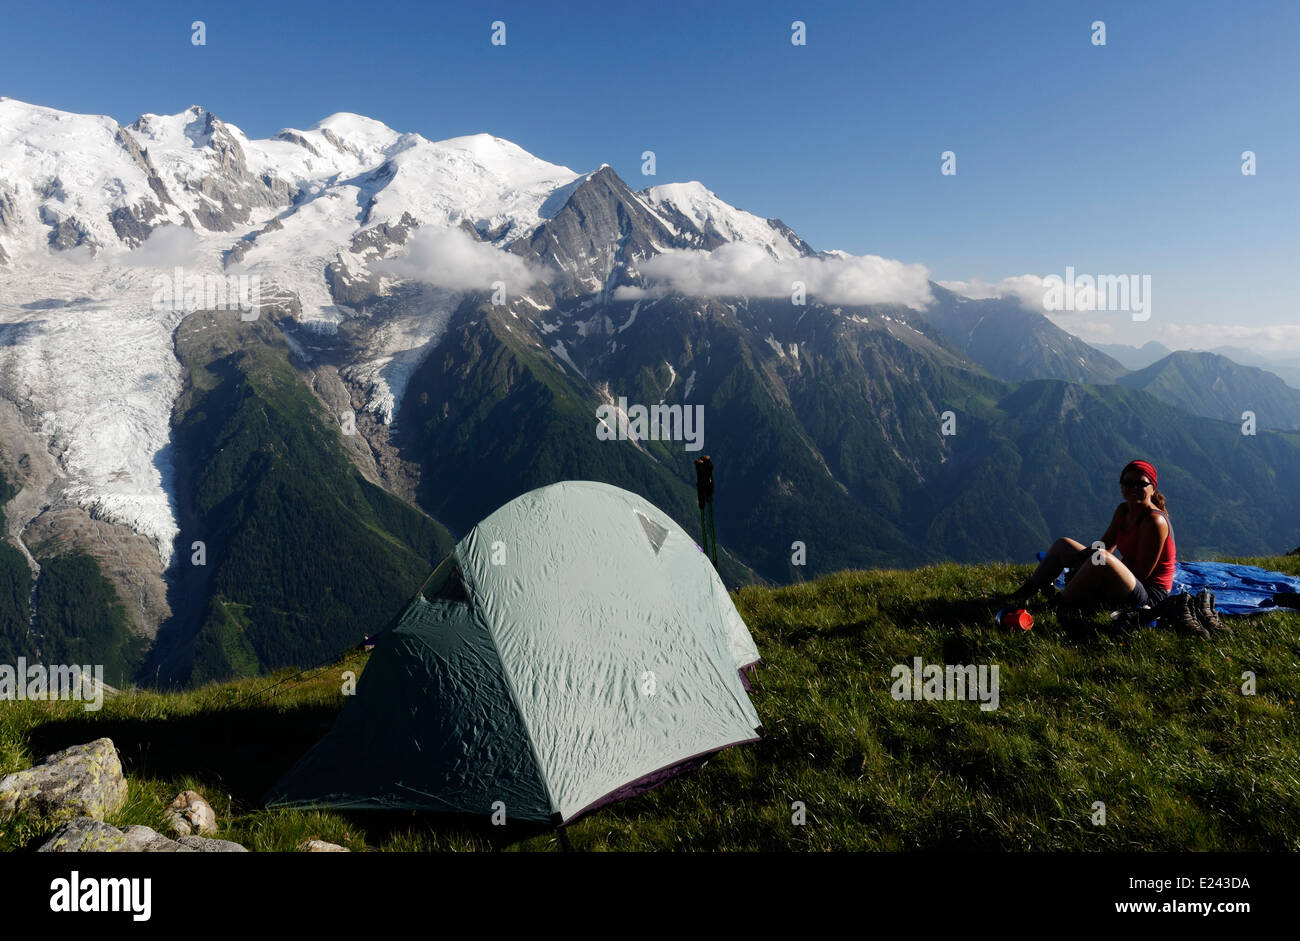 Une femme admire la vue sur le Brévent camping sauvage dans les Alpes françaises avec le massif du Mont Blanc au-delà Banque D'Images